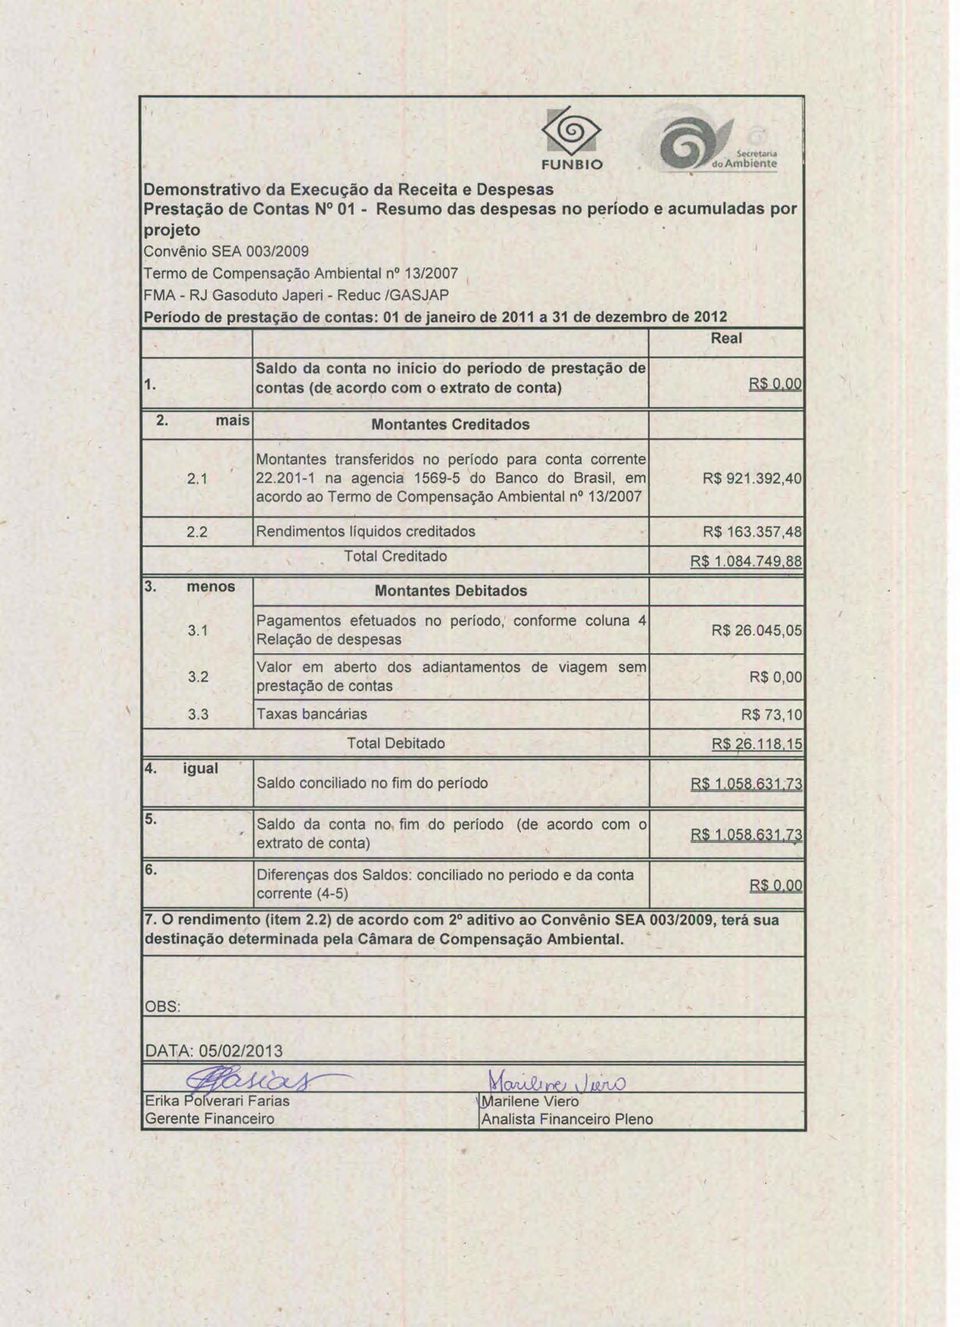 1312007 FMA - RJ Gasoduto Japeri - Reduc IGASJAP Período de prestação de contas: 01 de janeiro de 2011 a 31 de dezembro de 2012 Real 1. Saldo da conta no início do período de presta,ção de contas (da.